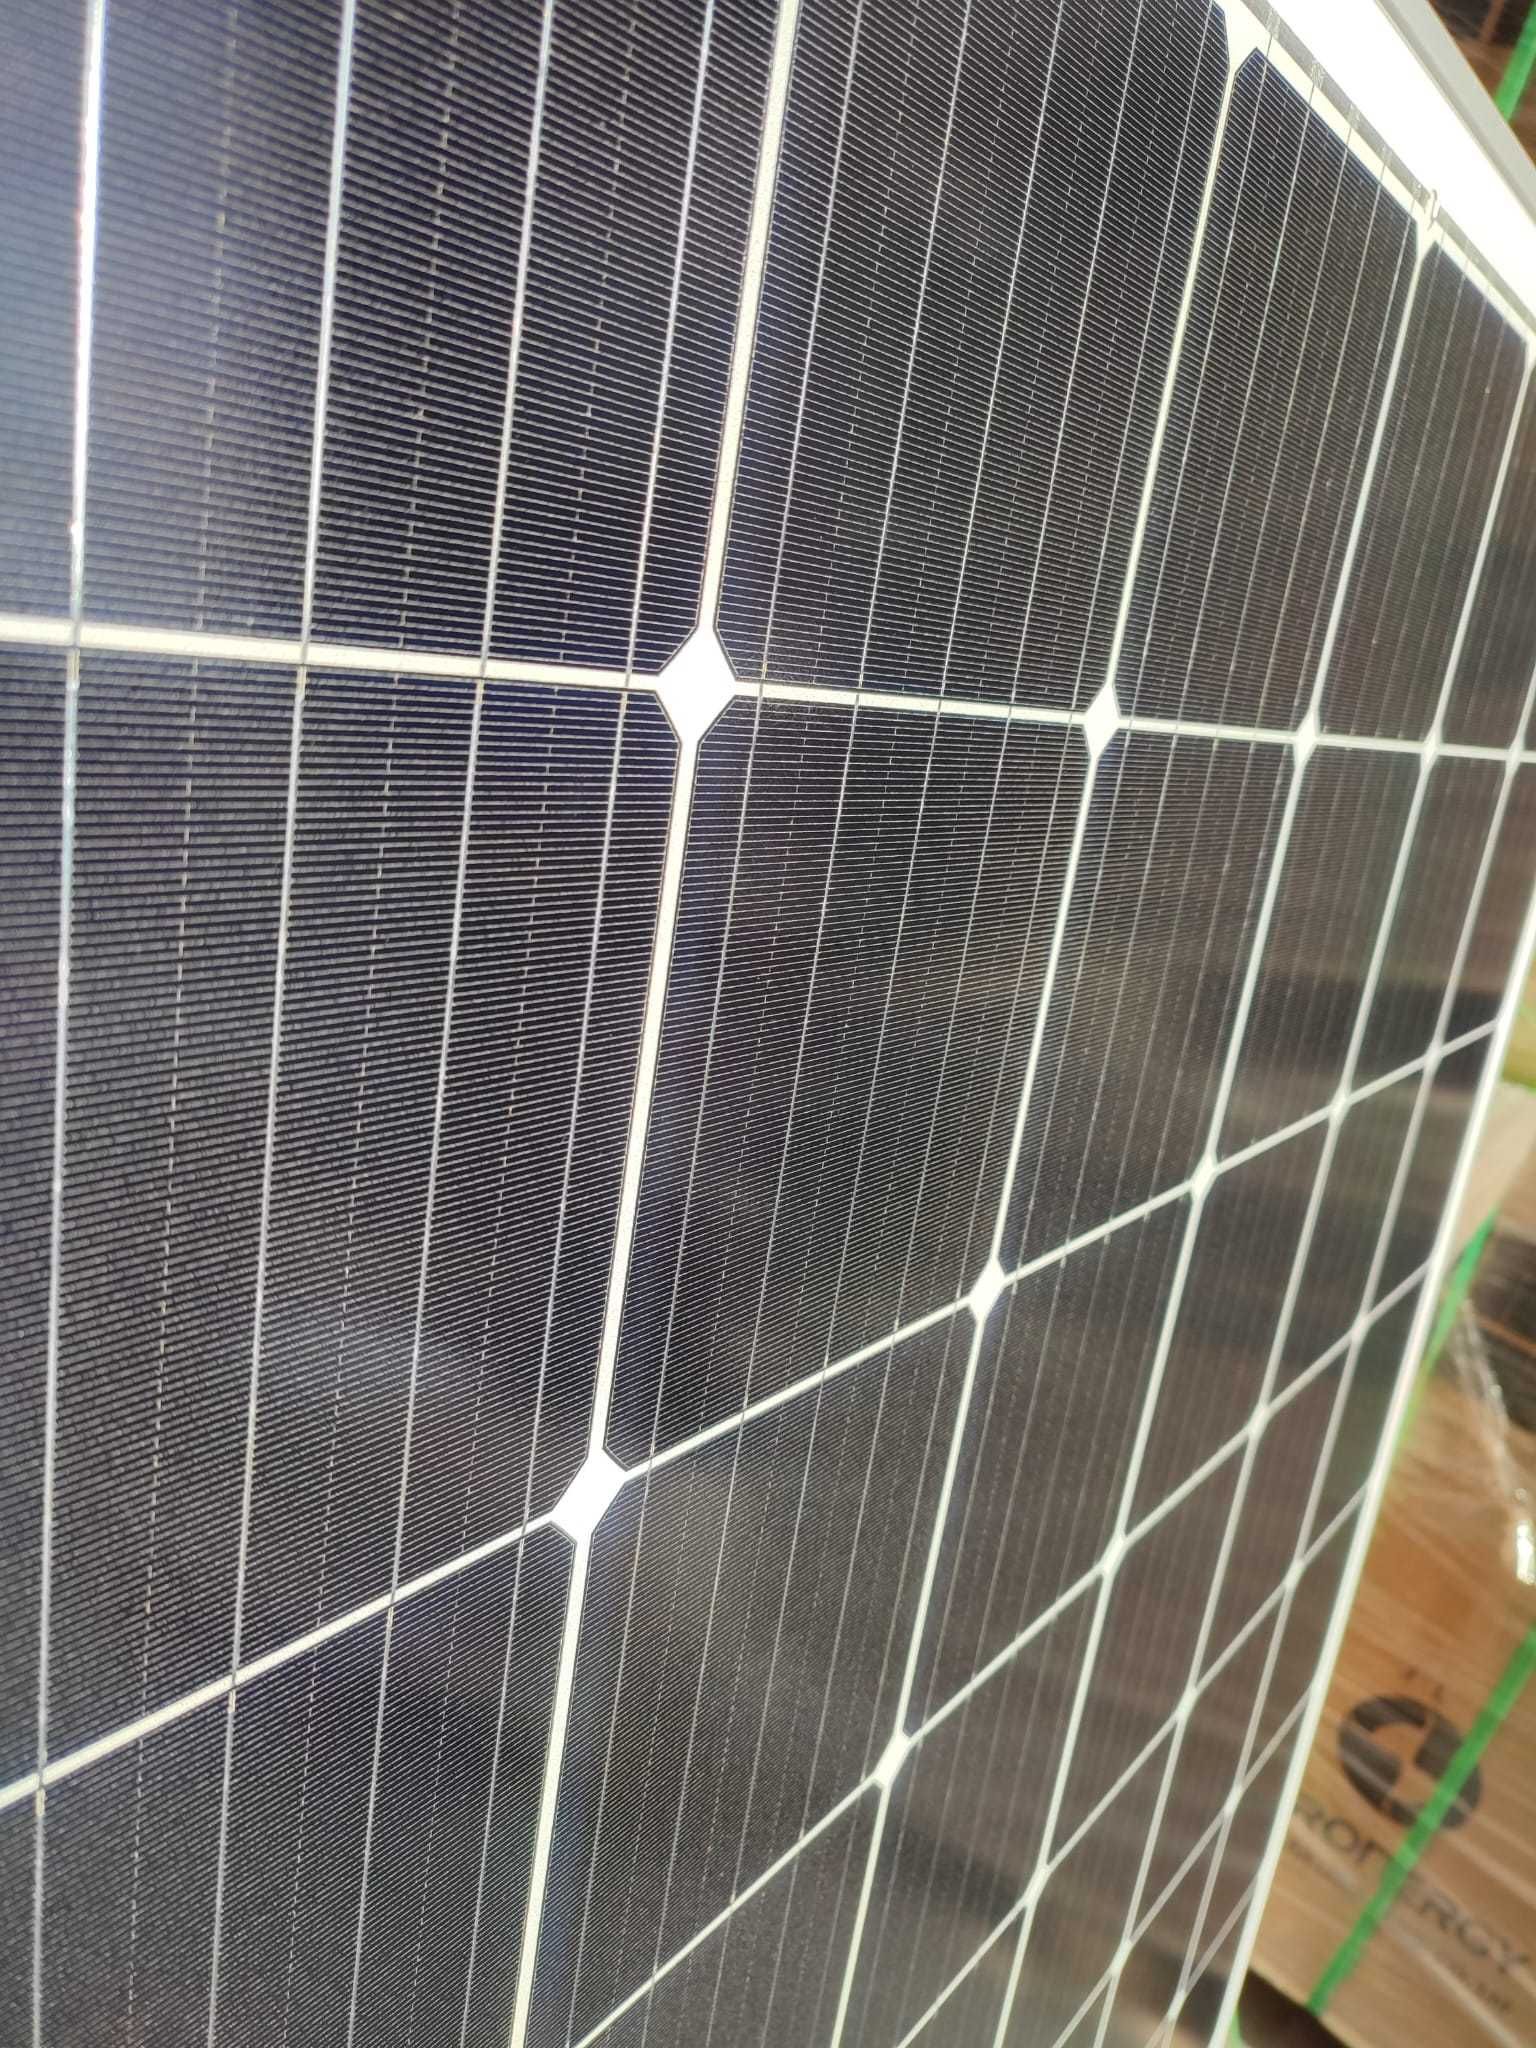 NOWE Panele fotowoltaiczne 310 W solary  OKAZJA